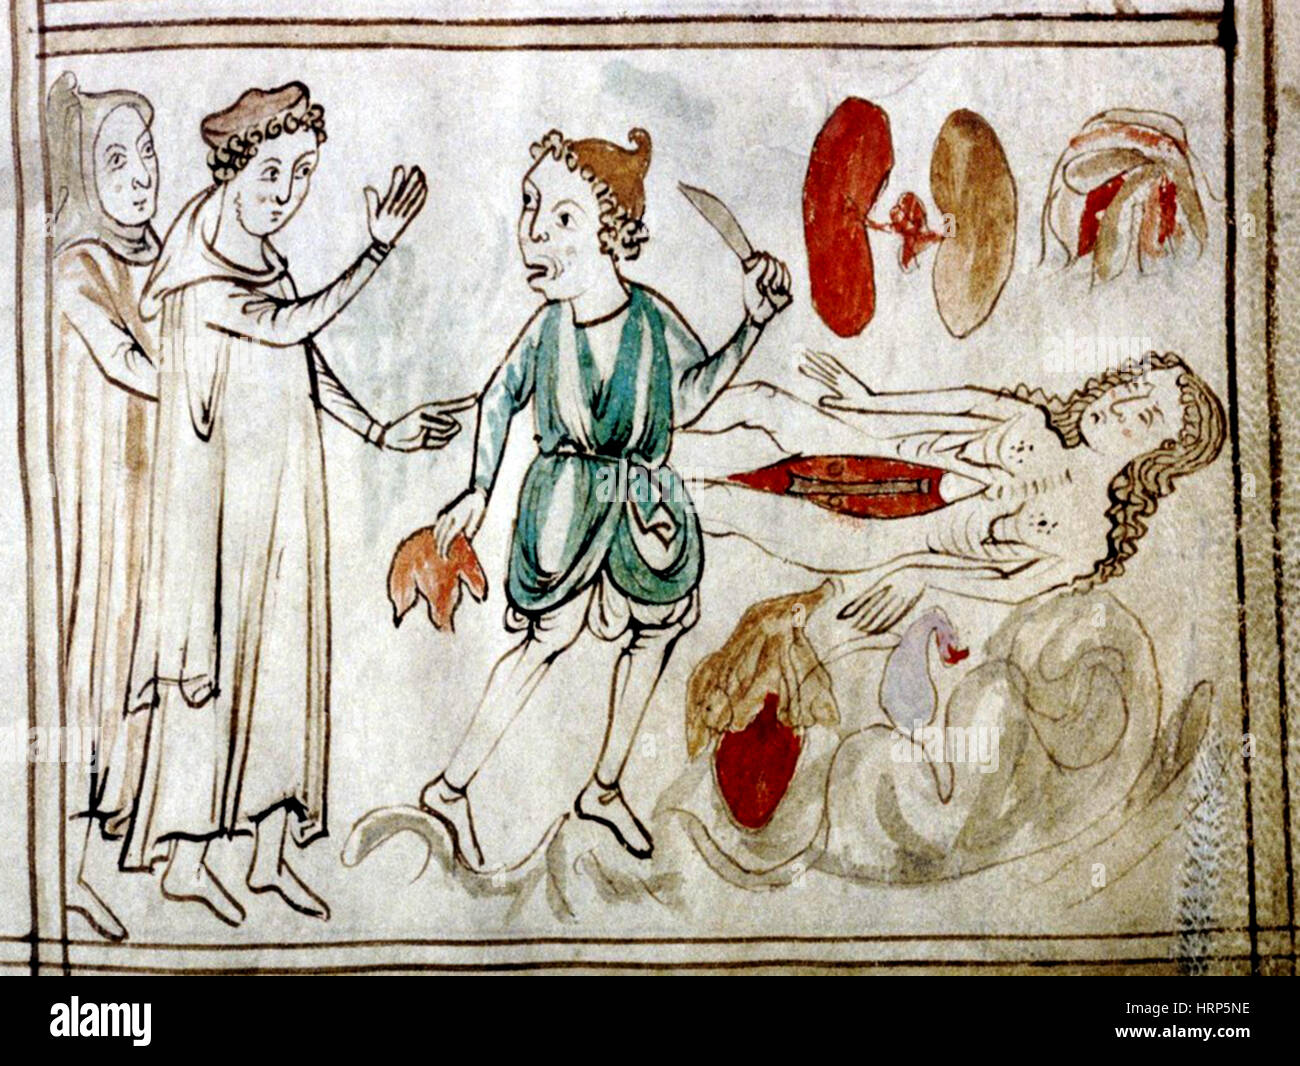 La dissezione del cadavere, del XIII secolo Foto Stock